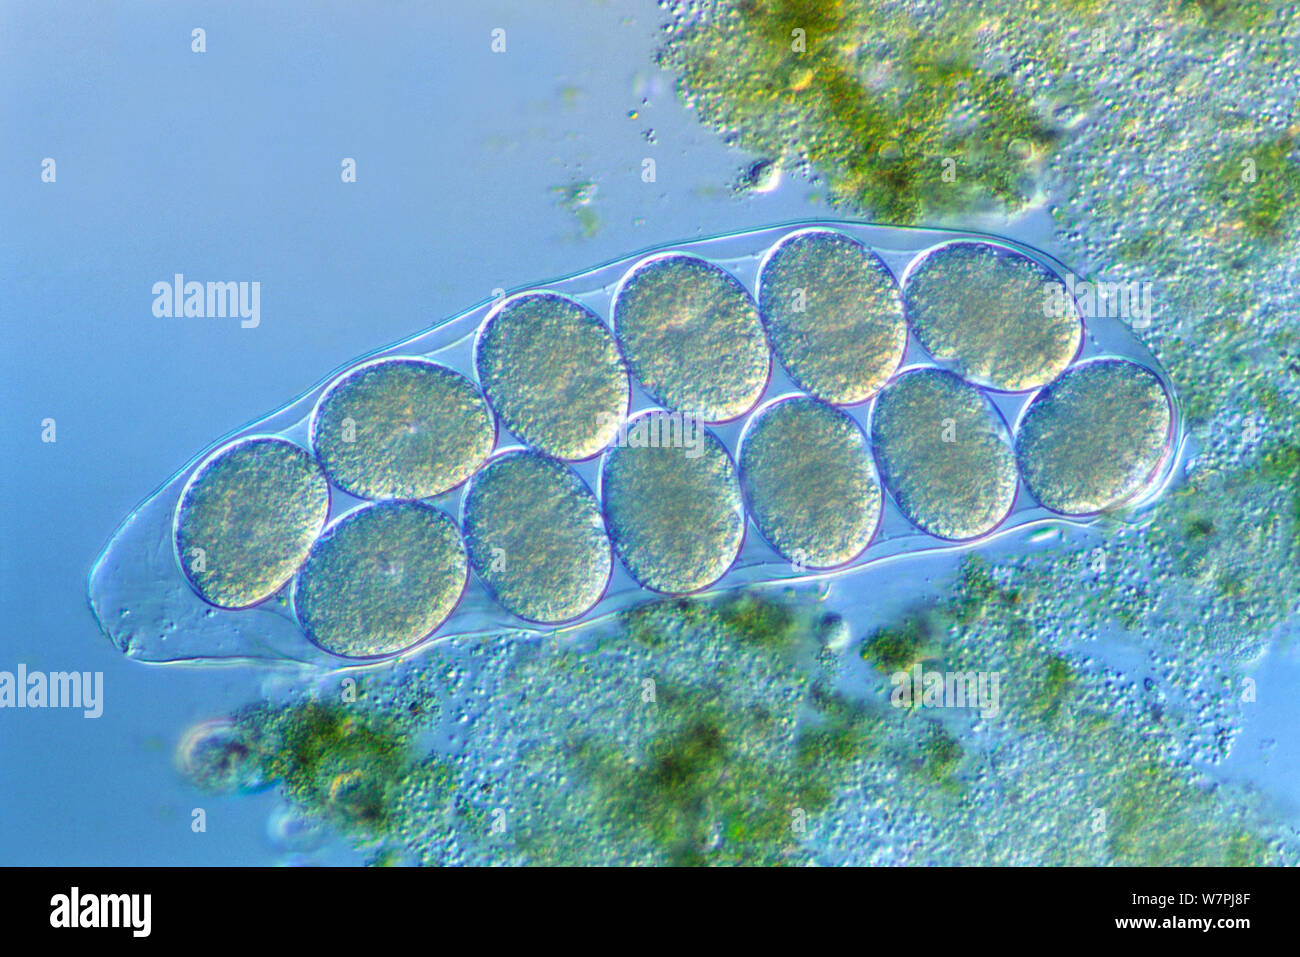 Tardigrade (Hypsibius dujardini) cuticle containing eggs. Stock Photo